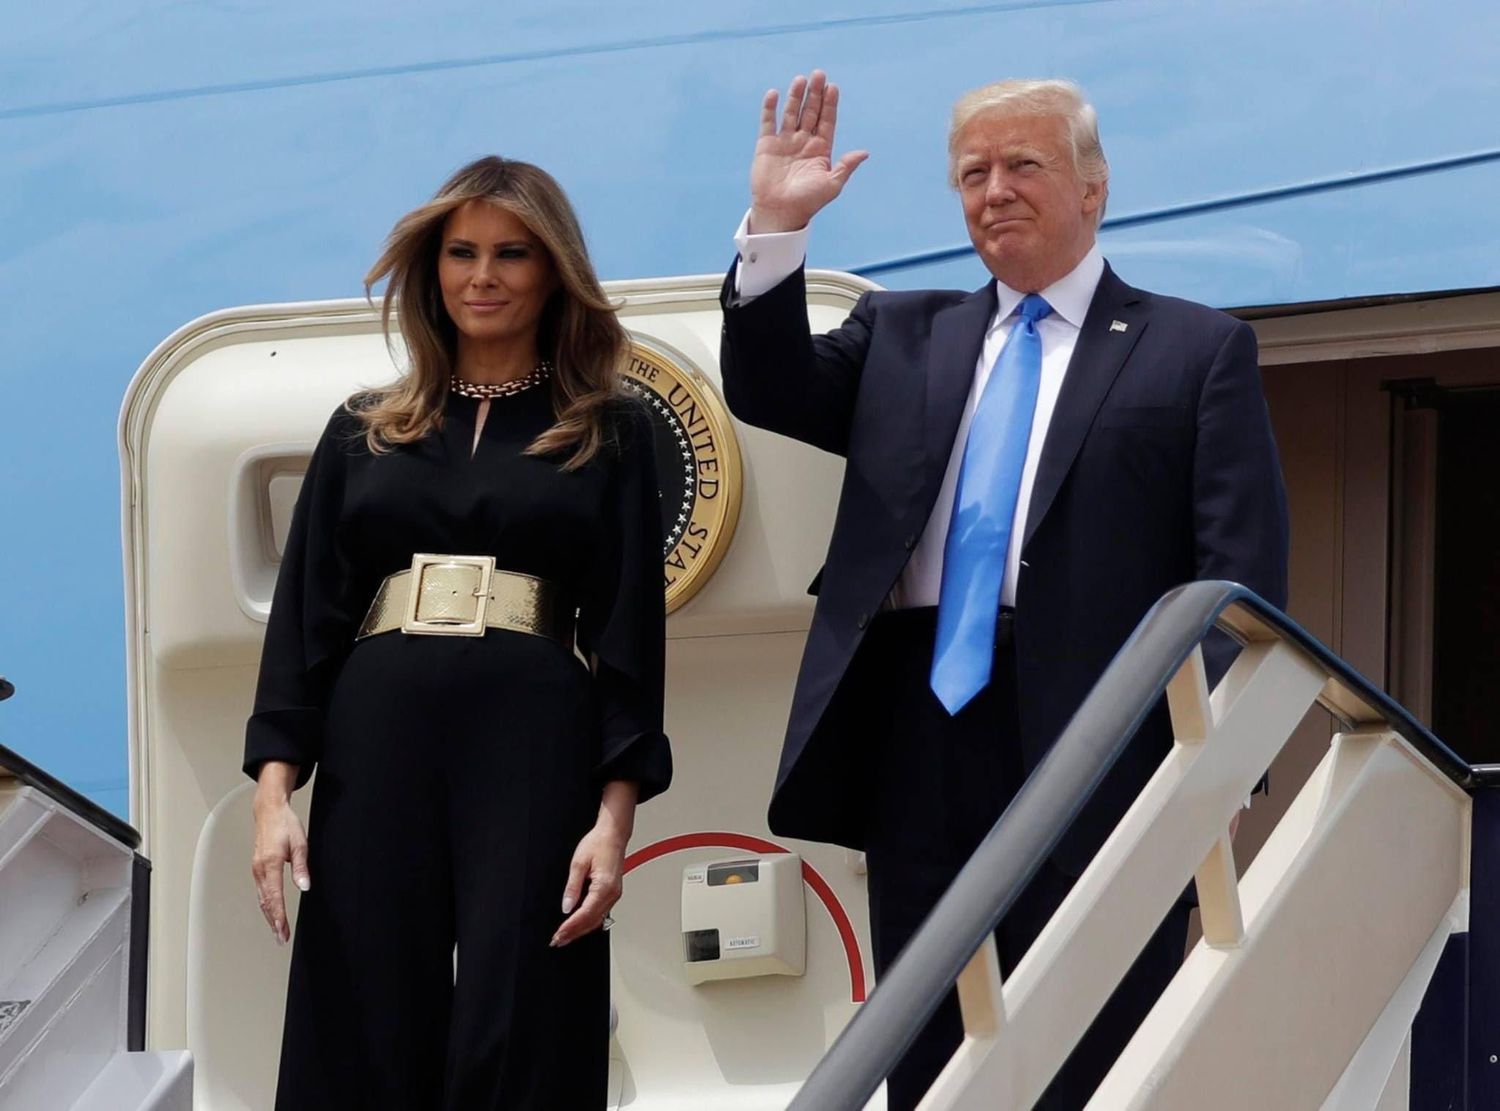 الرئيس الأميركي دونالد ترامب وزوجته ميلانا في السعودية